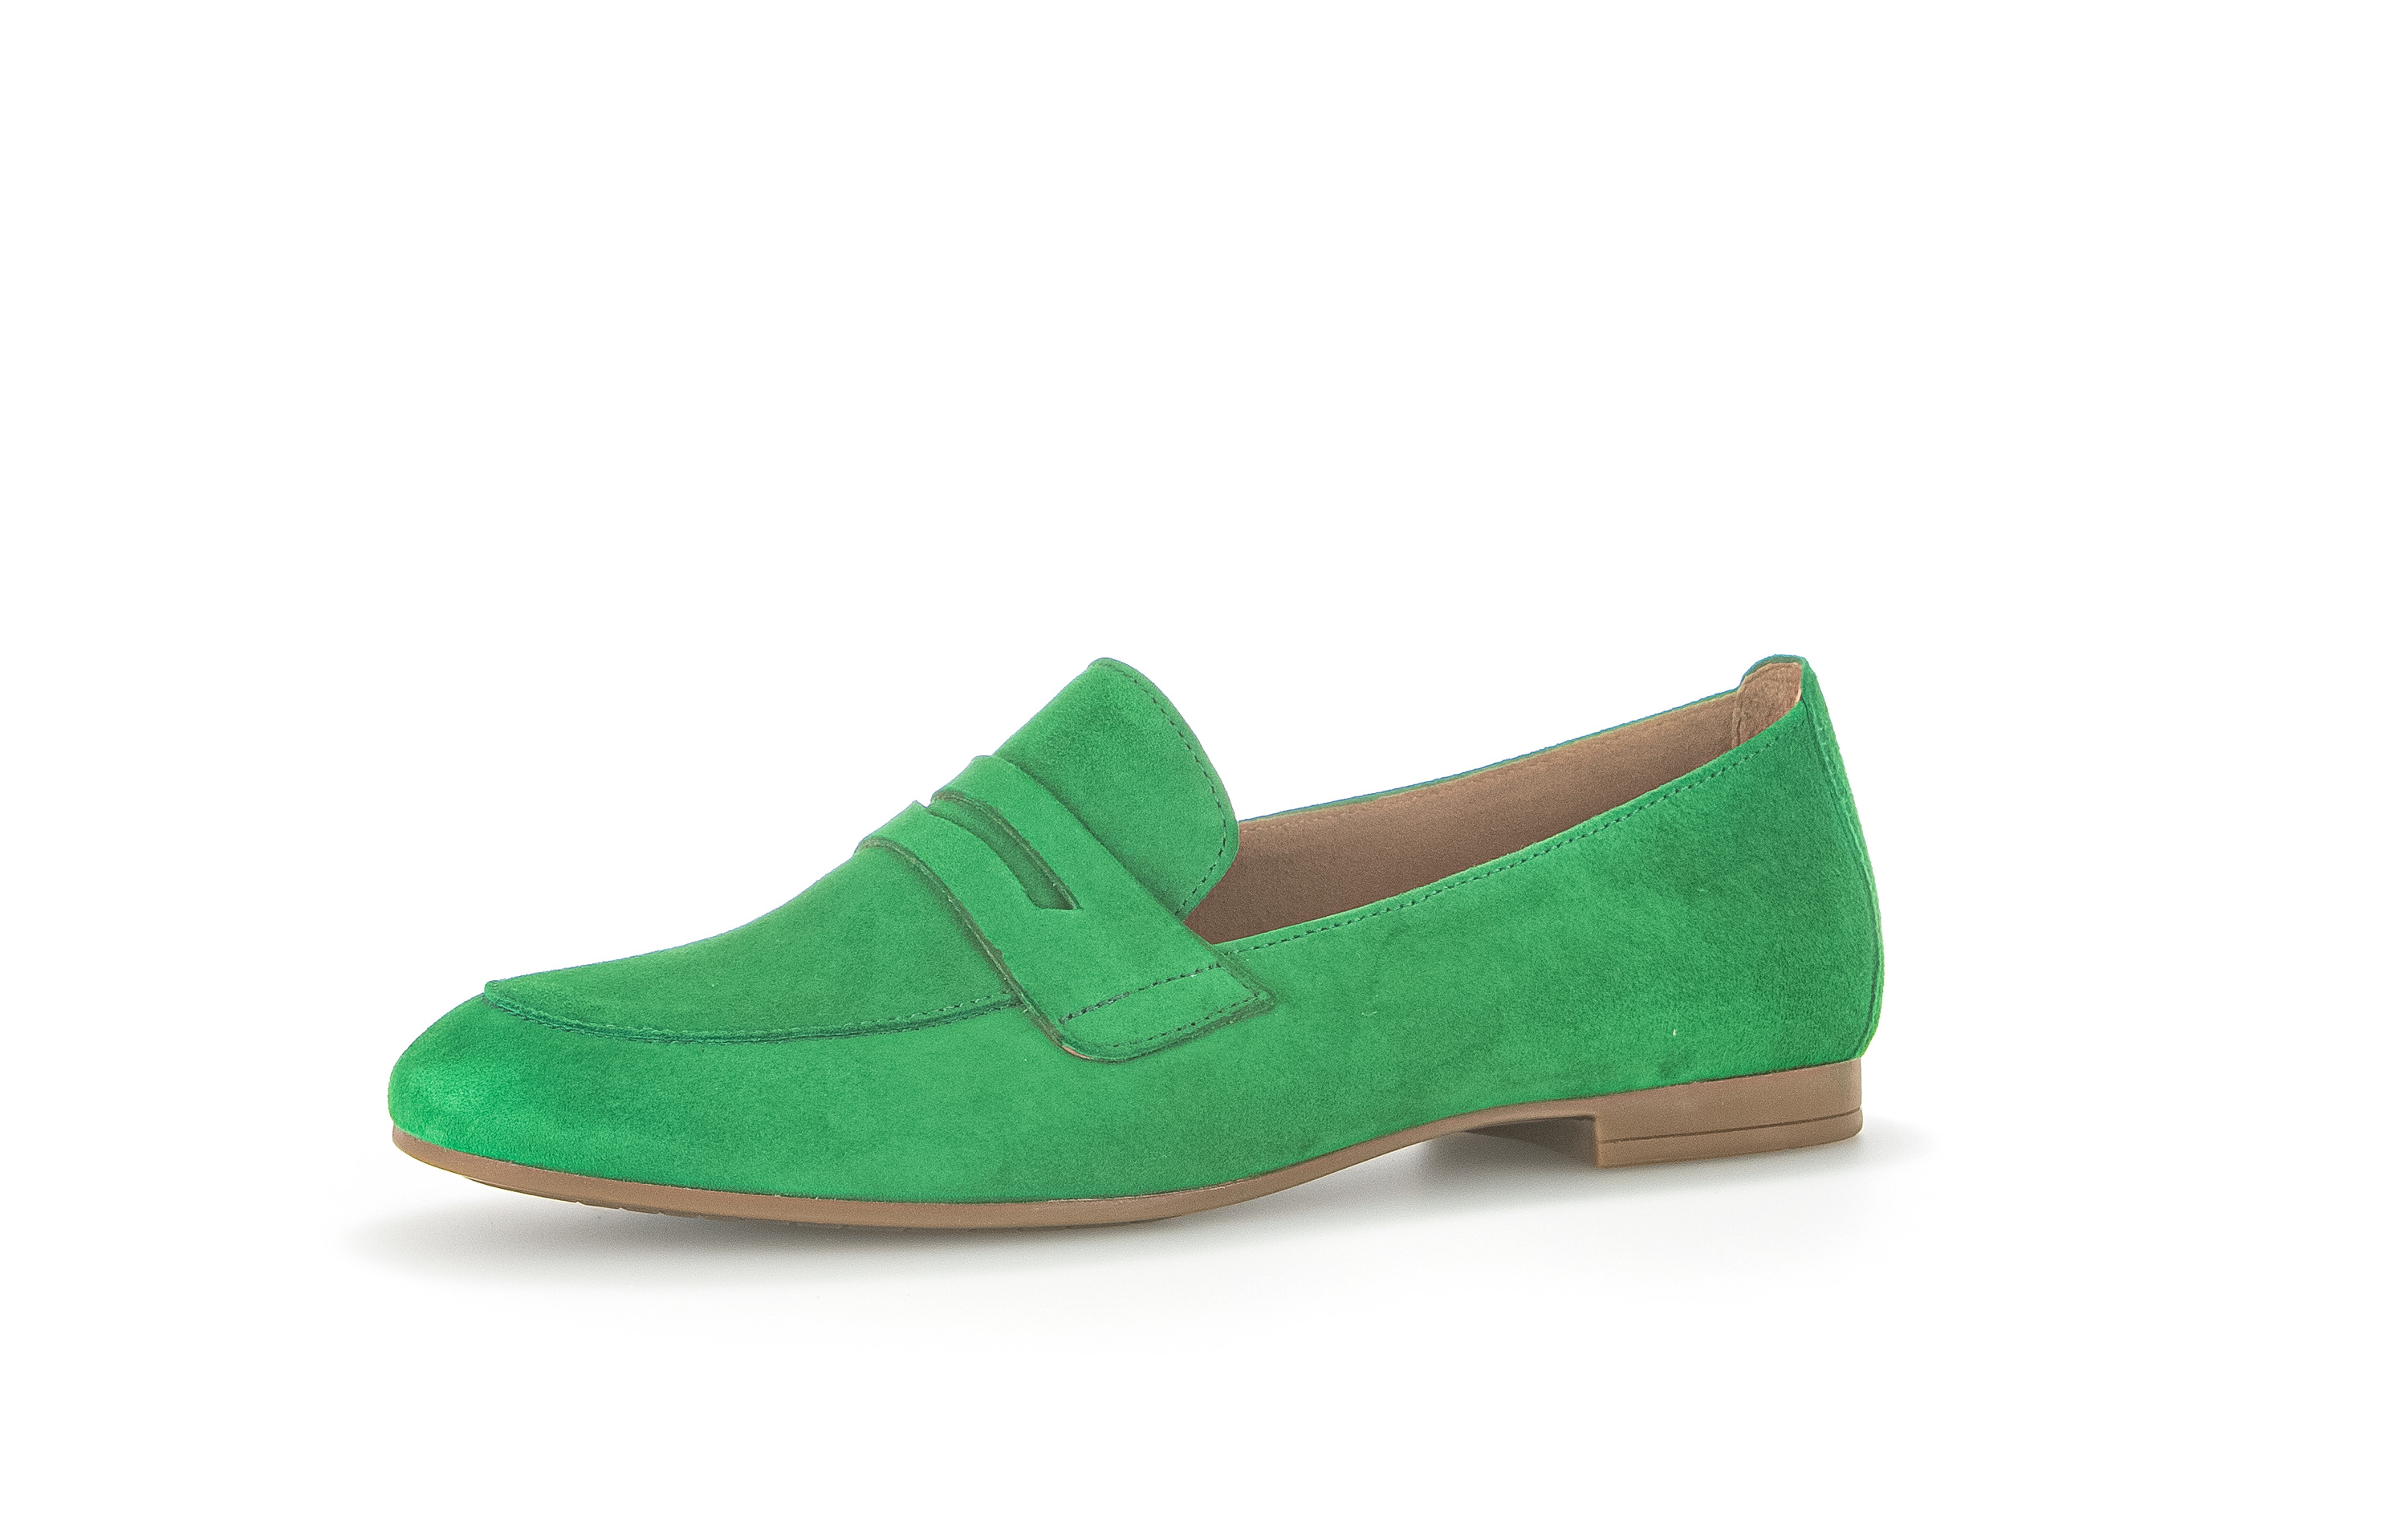 Gabor Shoes Slipper - Verde Leder